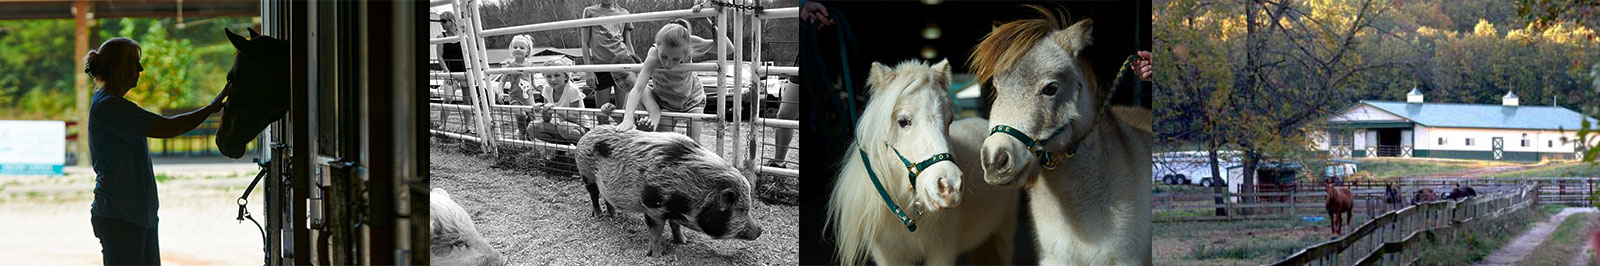 Rescued farm animals at Longmeadow Rescue Ranch